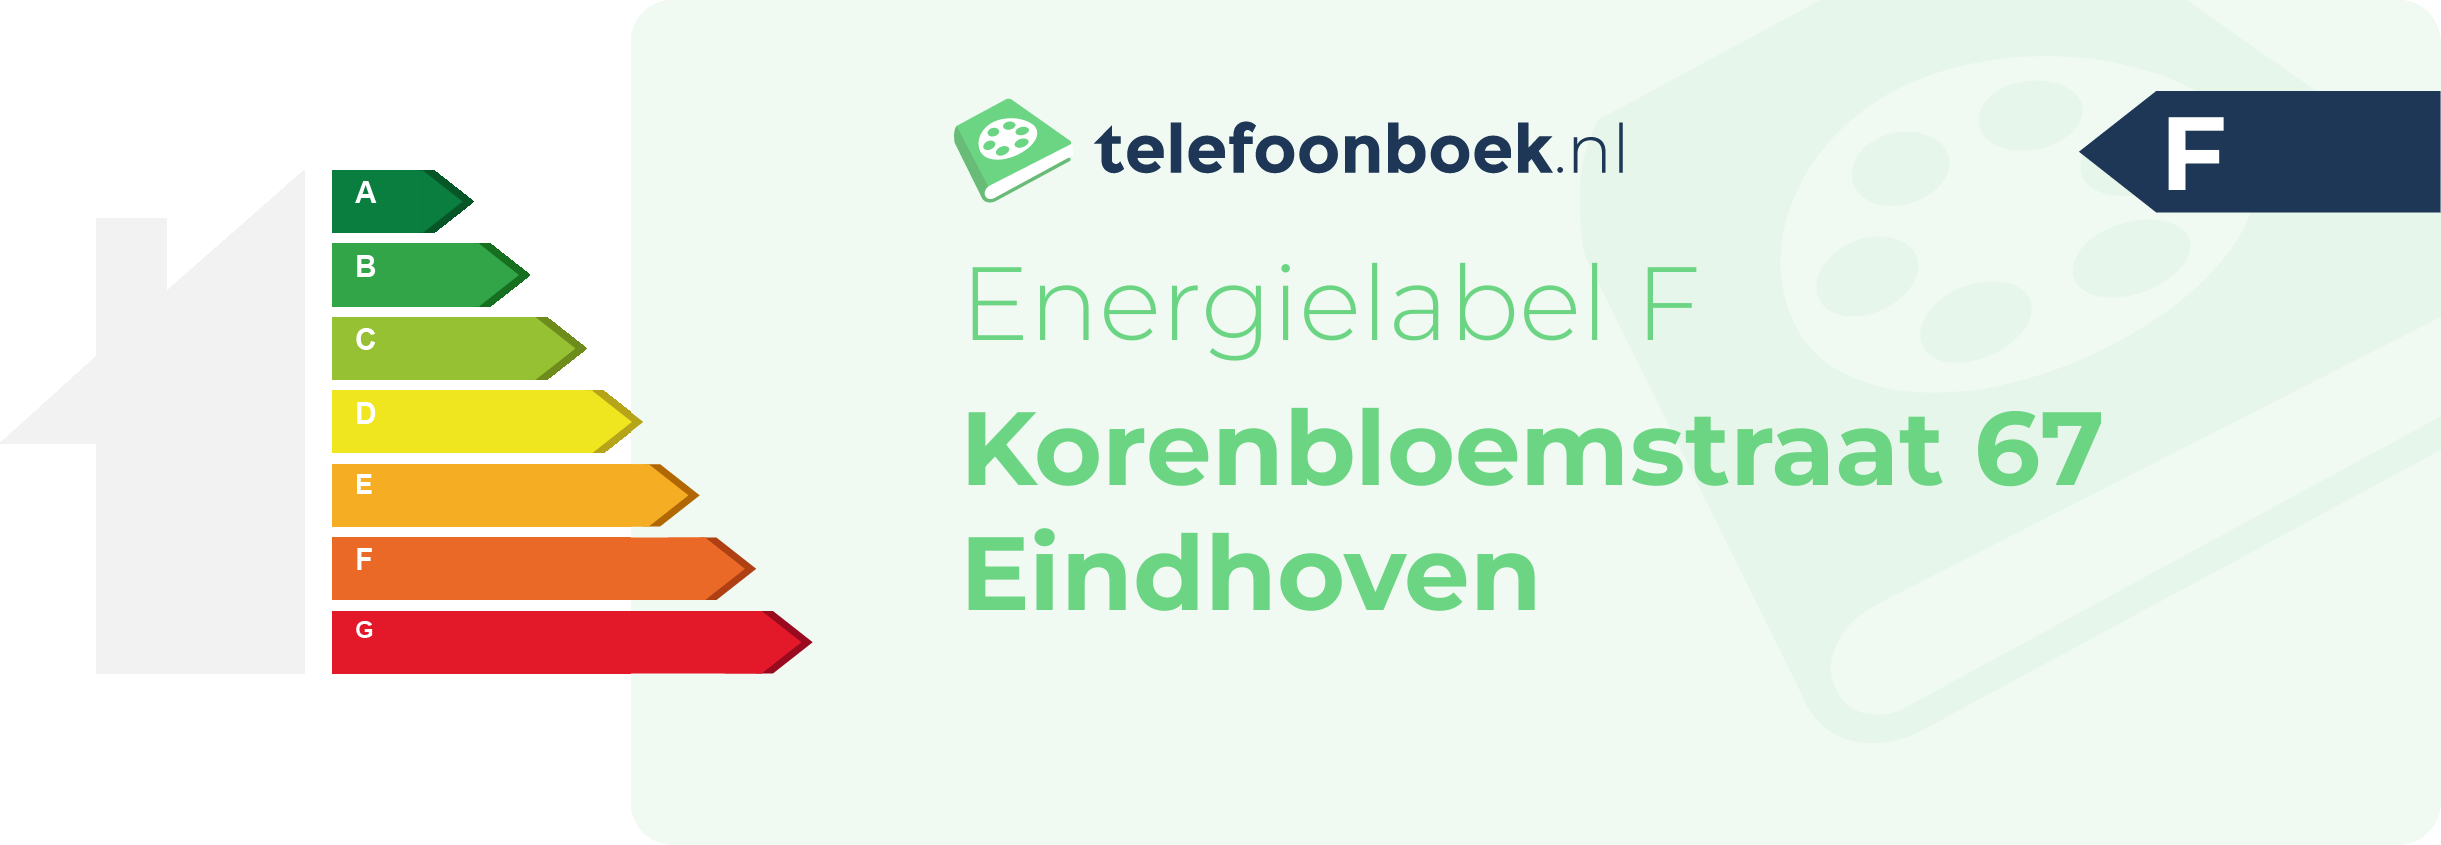 Energielabel Korenbloemstraat 67 Eindhoven